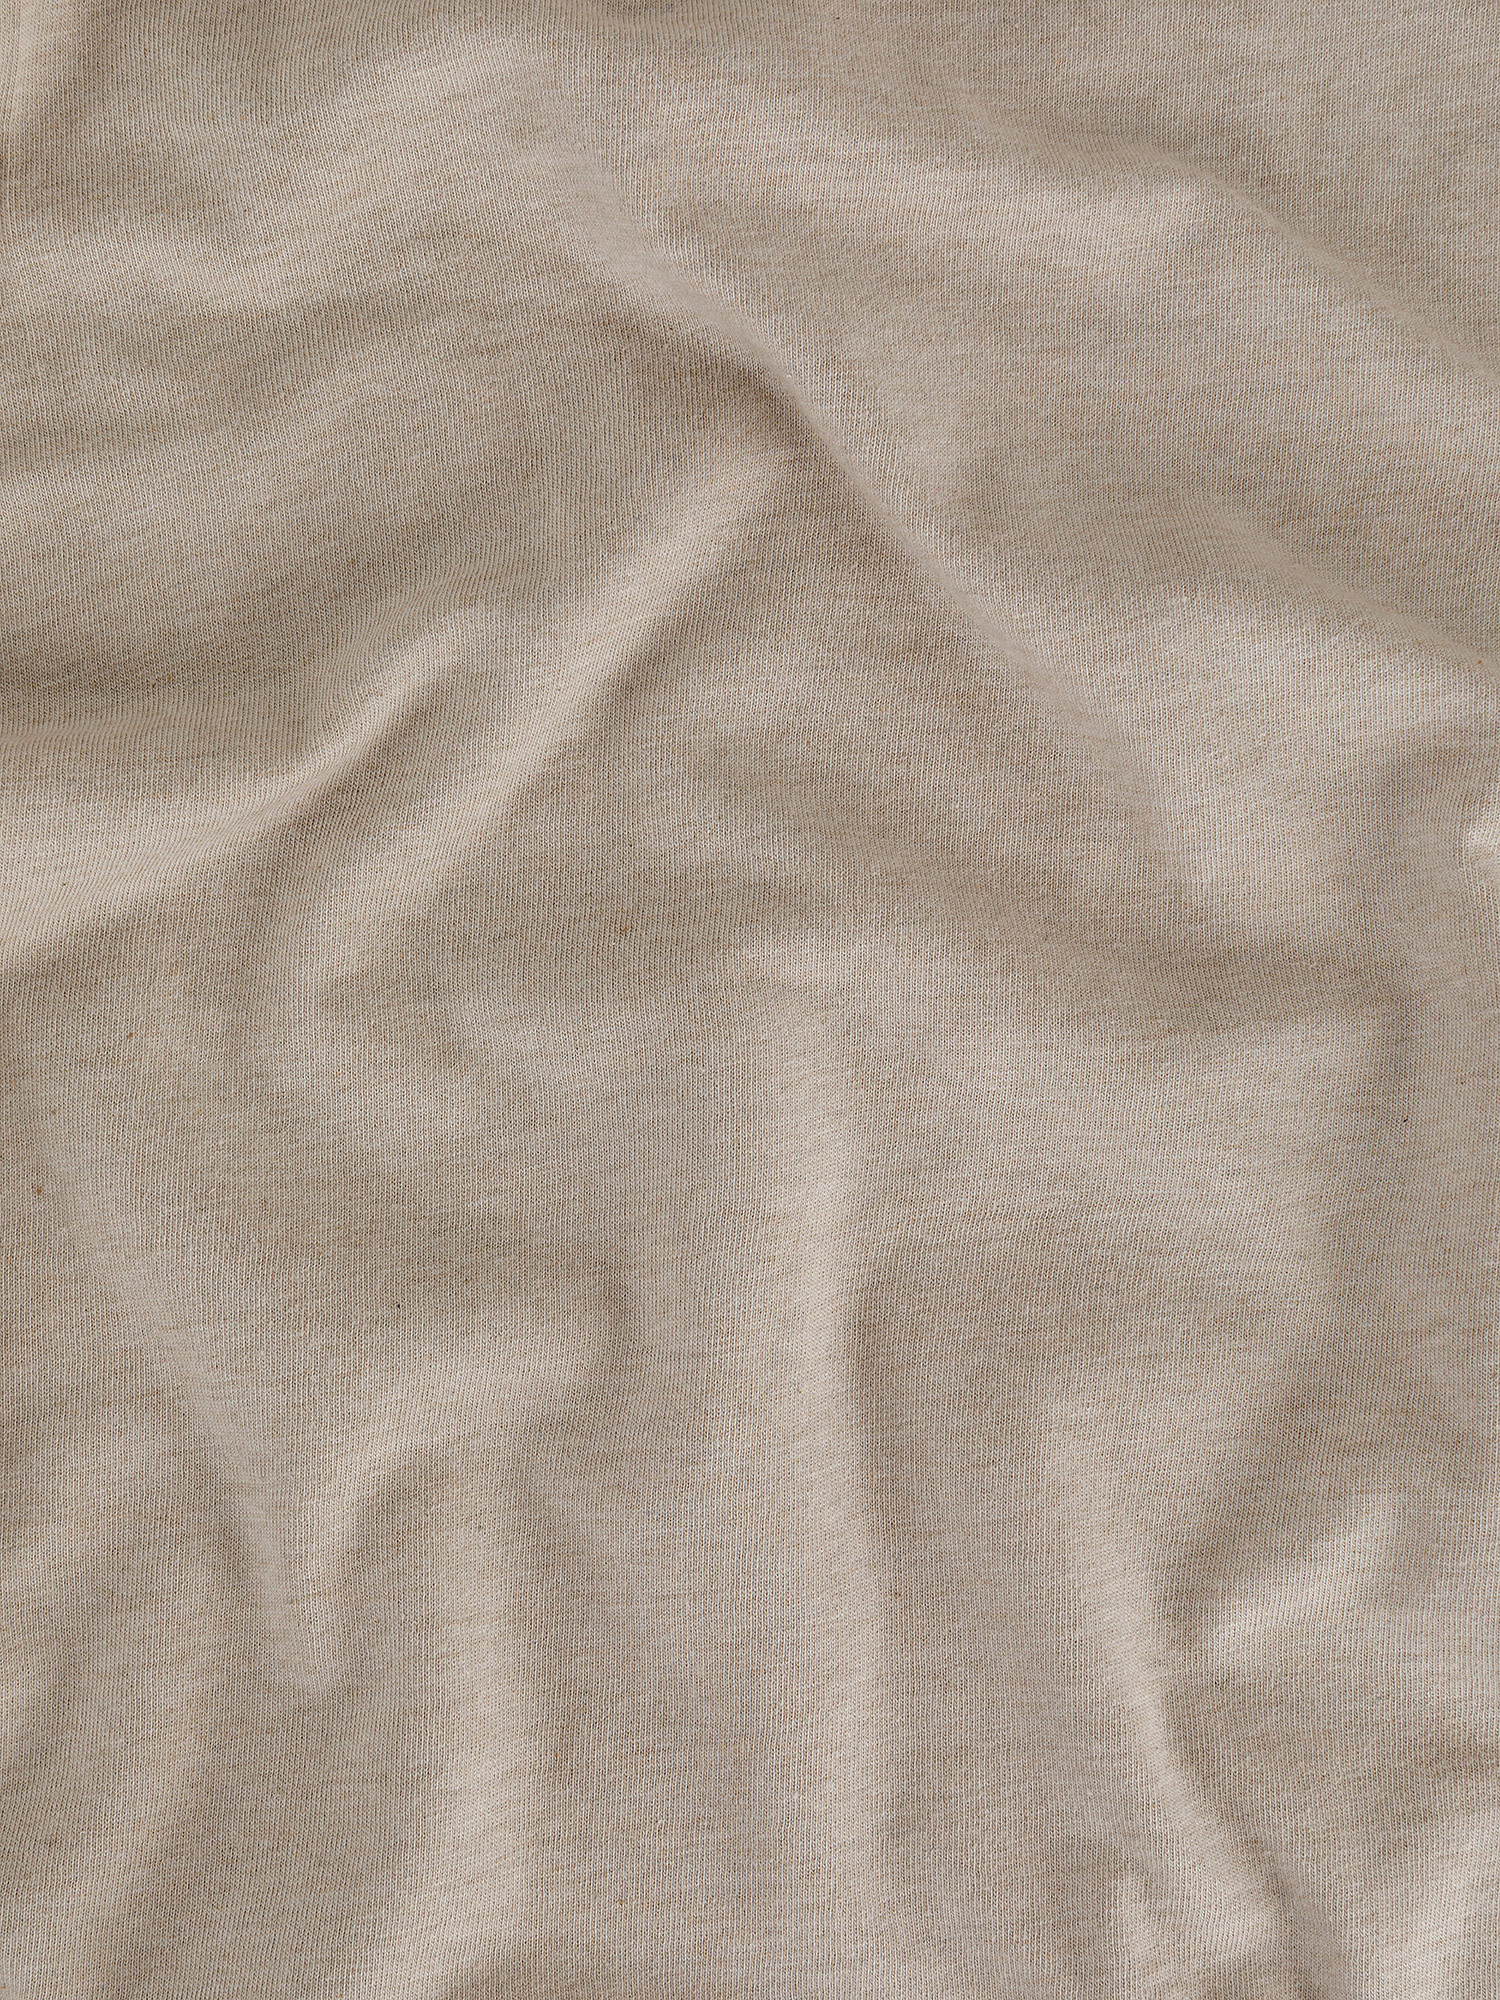 Solid color cotton jersey duvet cover set, Beige, large image number 2